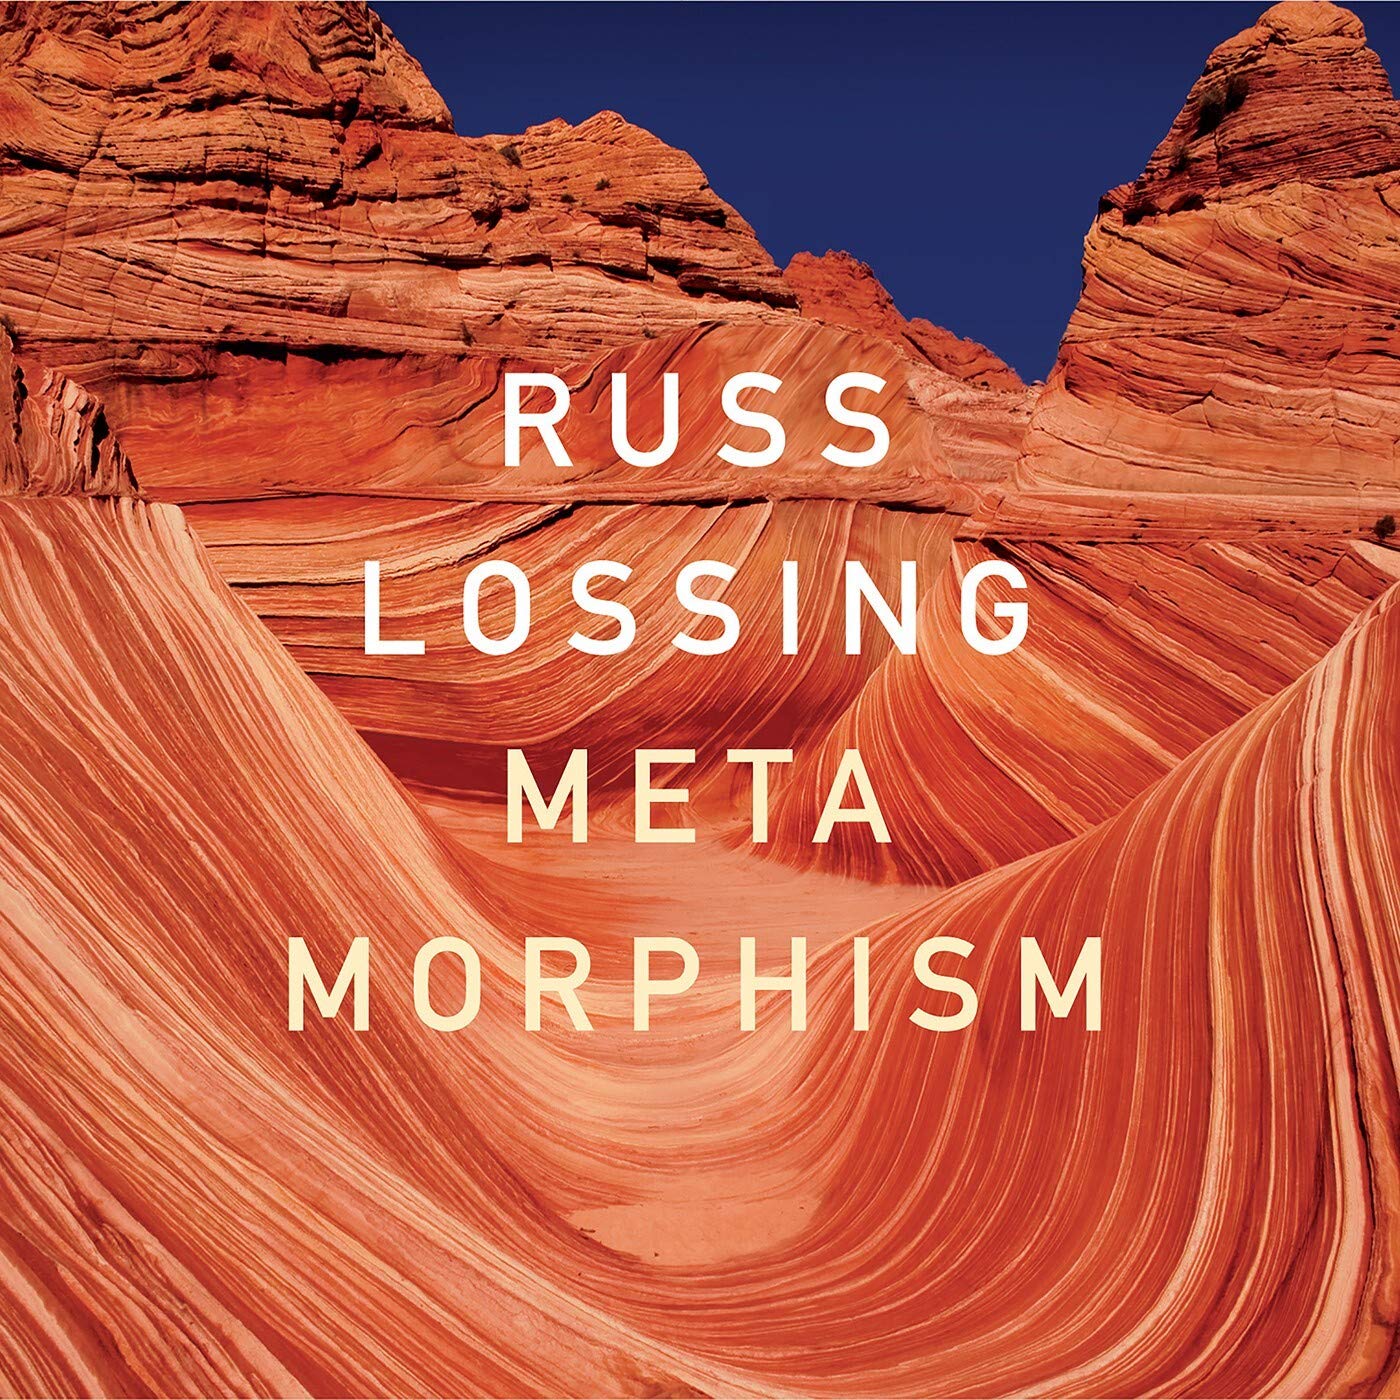 RUSS LOSSING - Metamorphism cover 